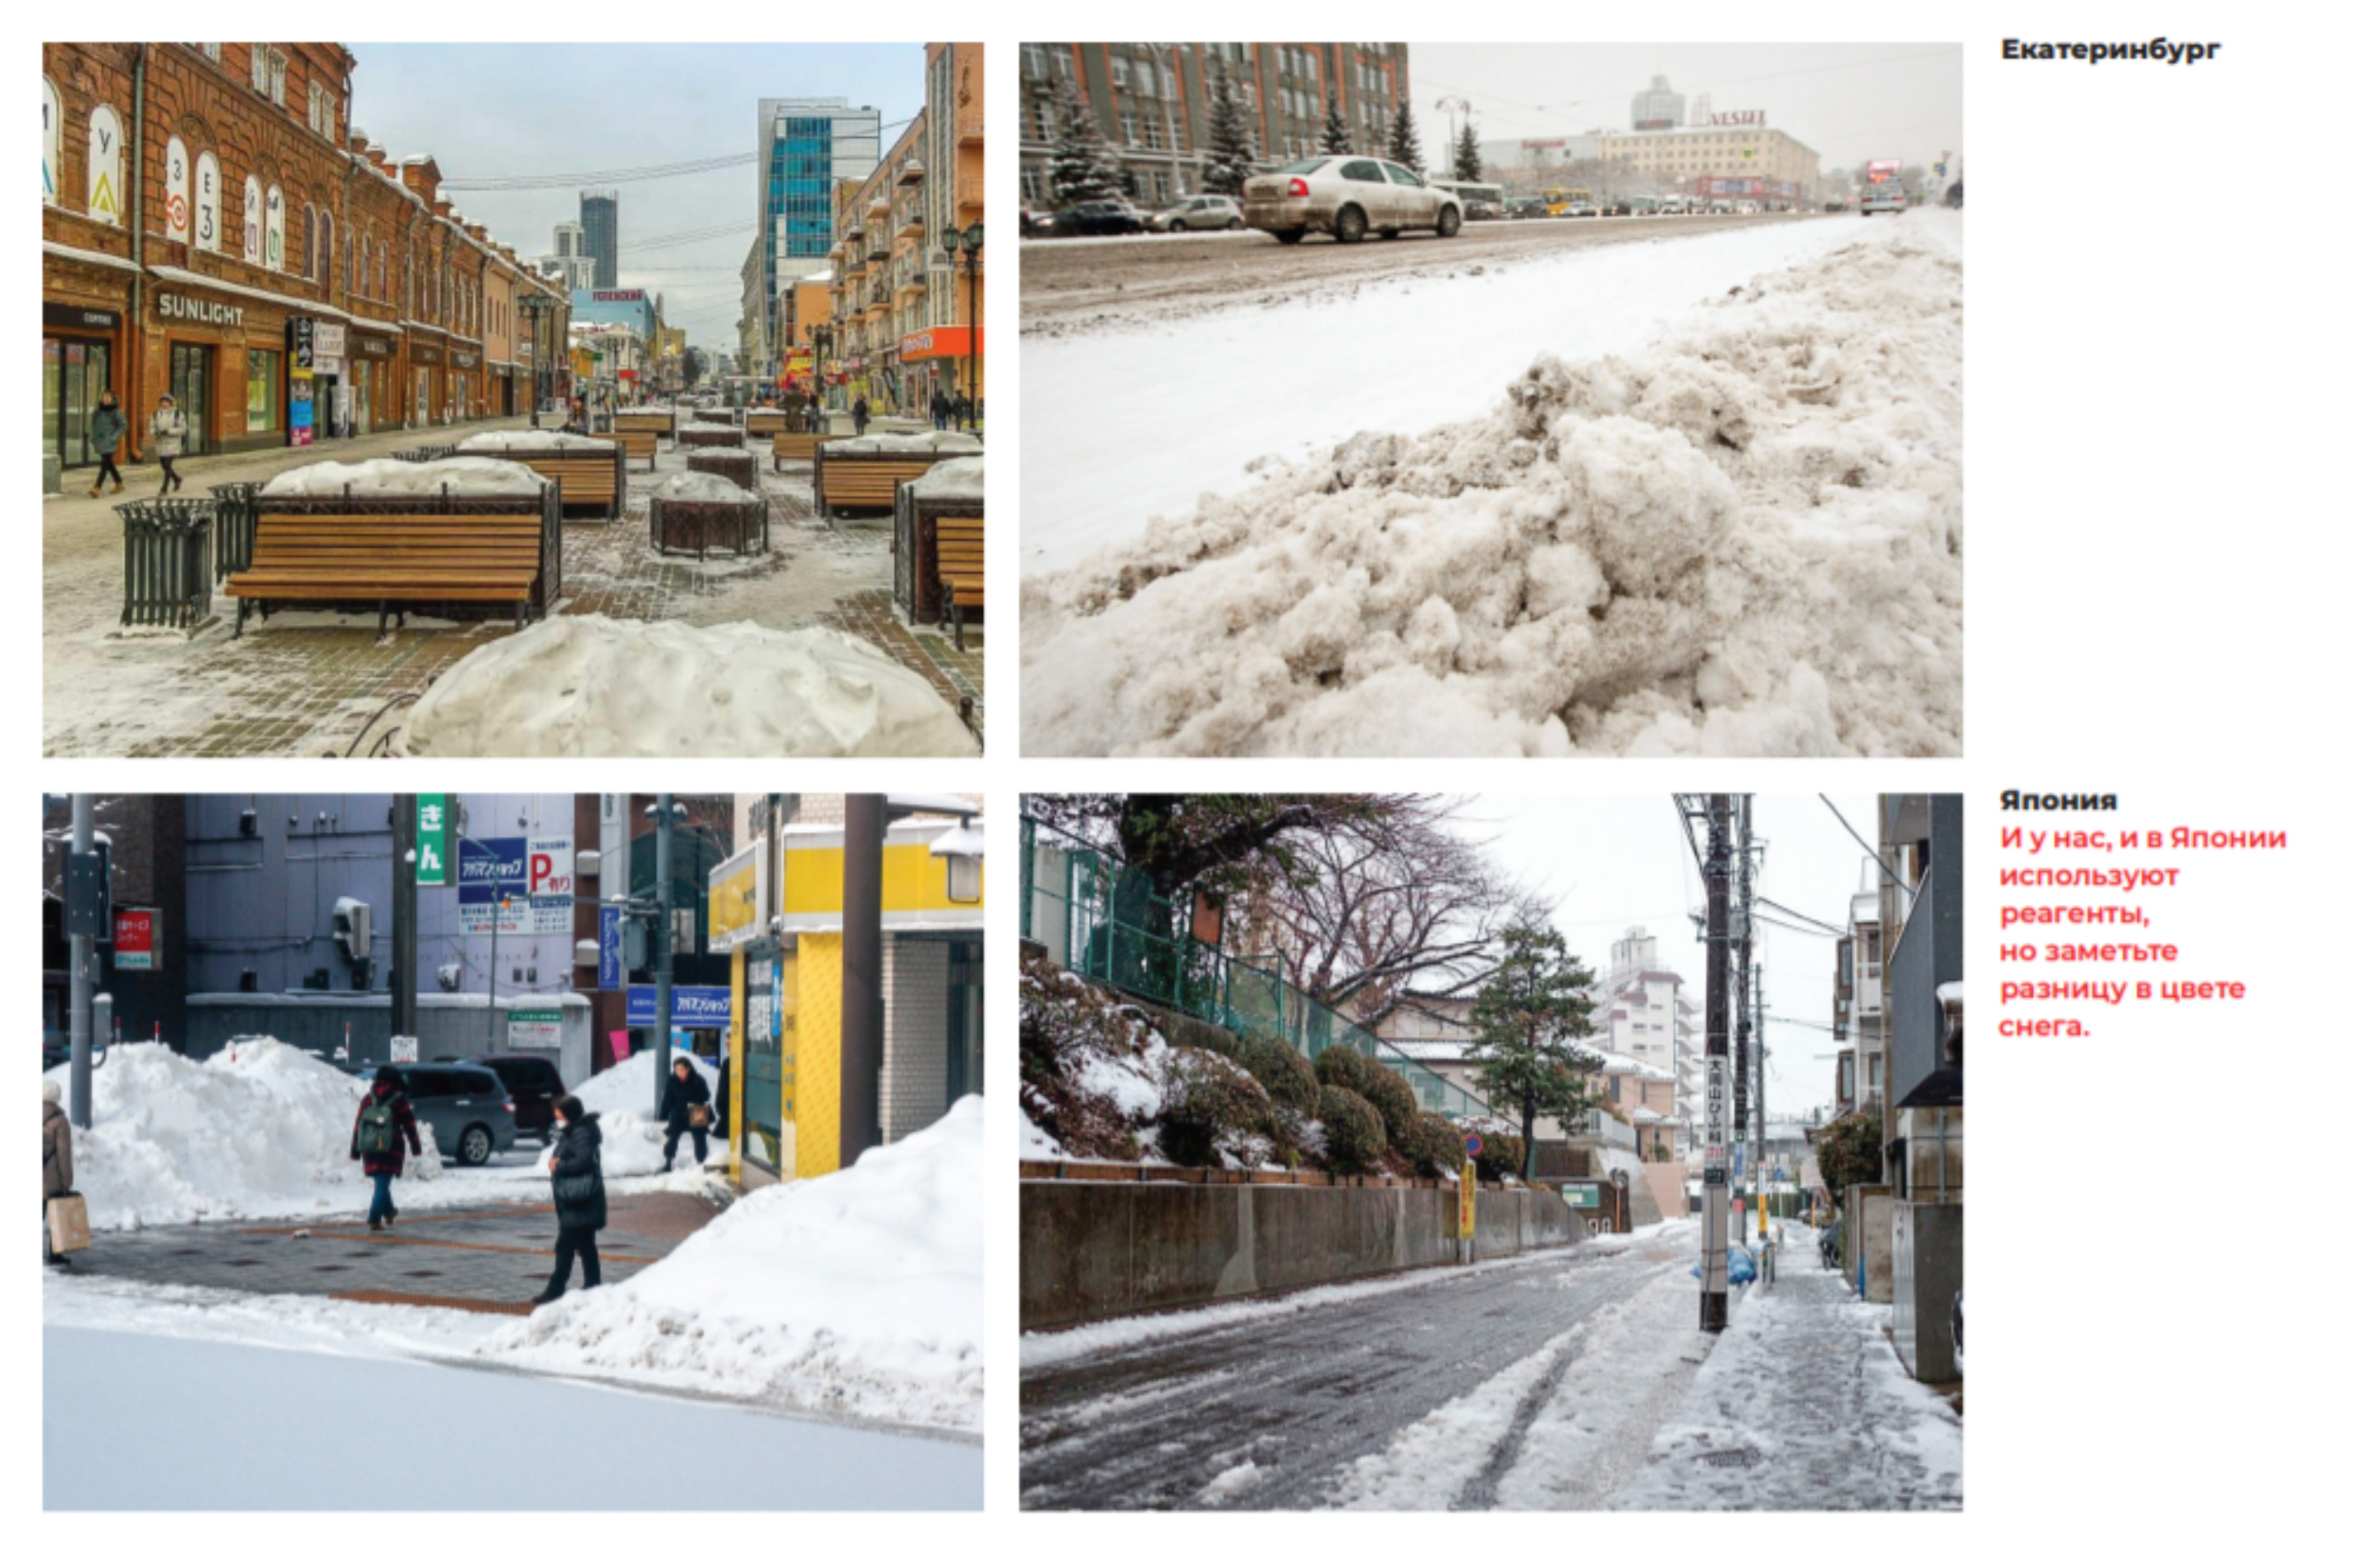 Так отличается оттенок снега на улицах Екатеринбурга и городов Японии